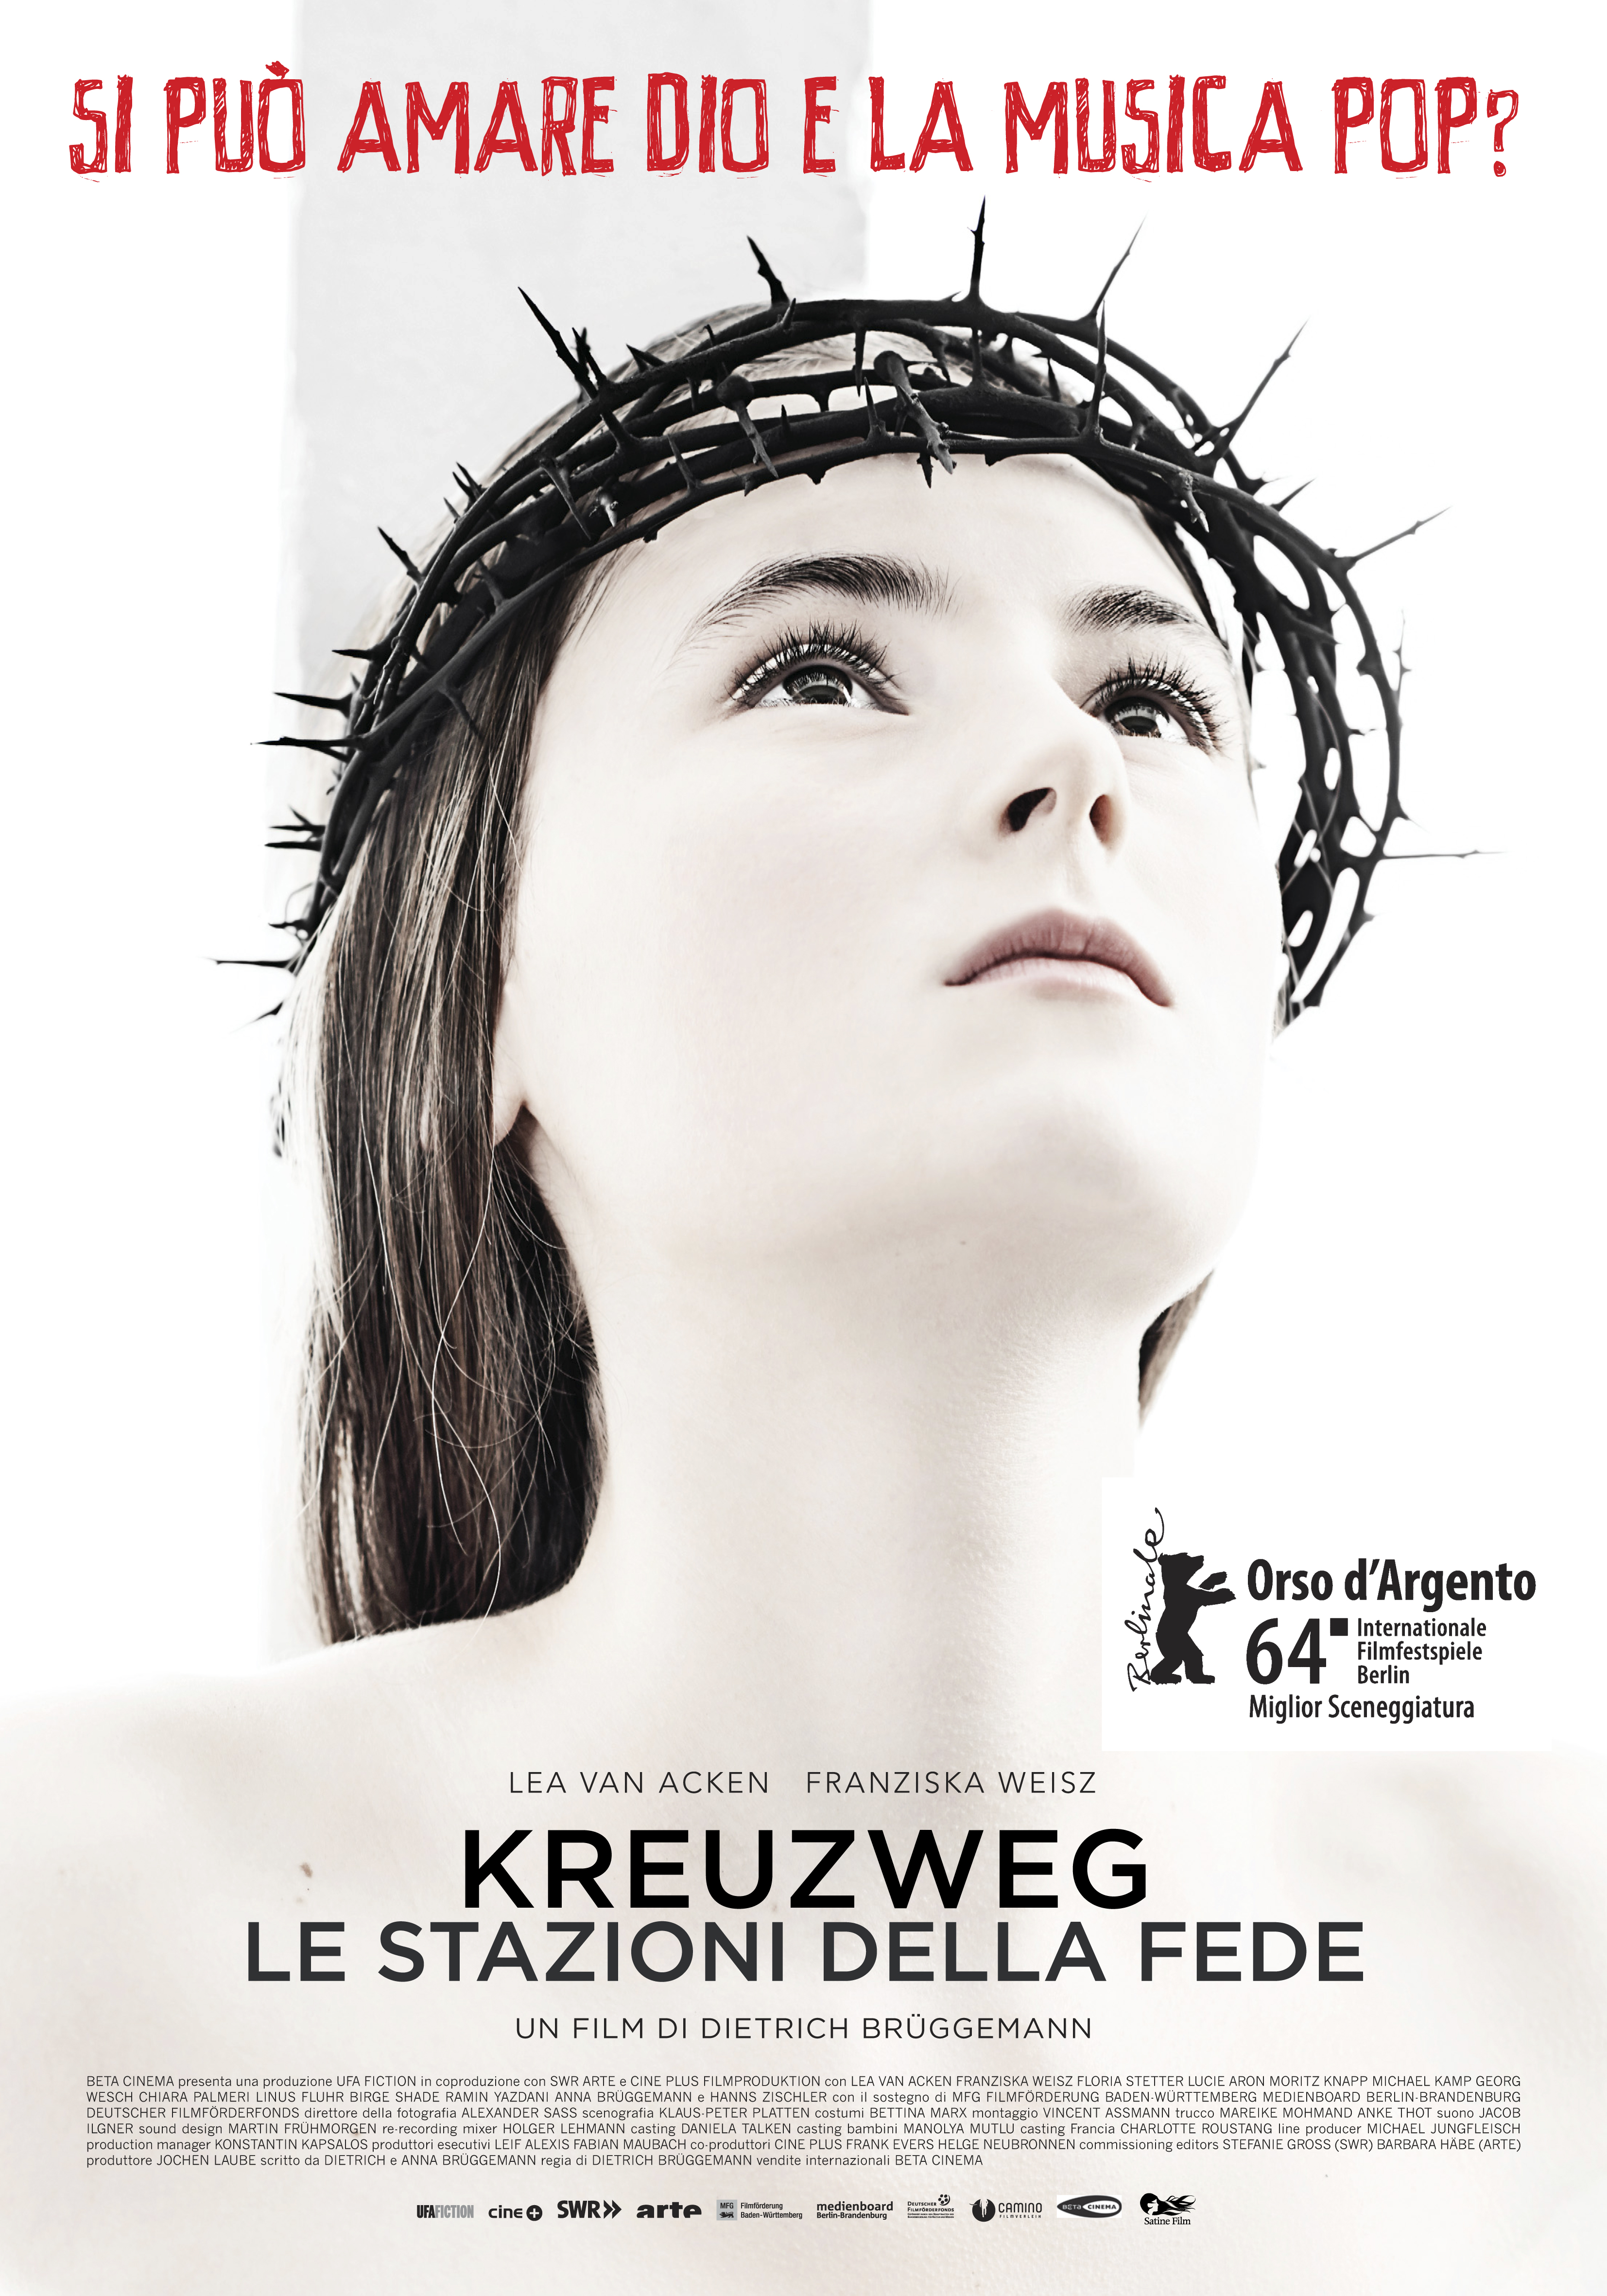 Kreuzweg – Le stazioni della fede: il trailer italiano